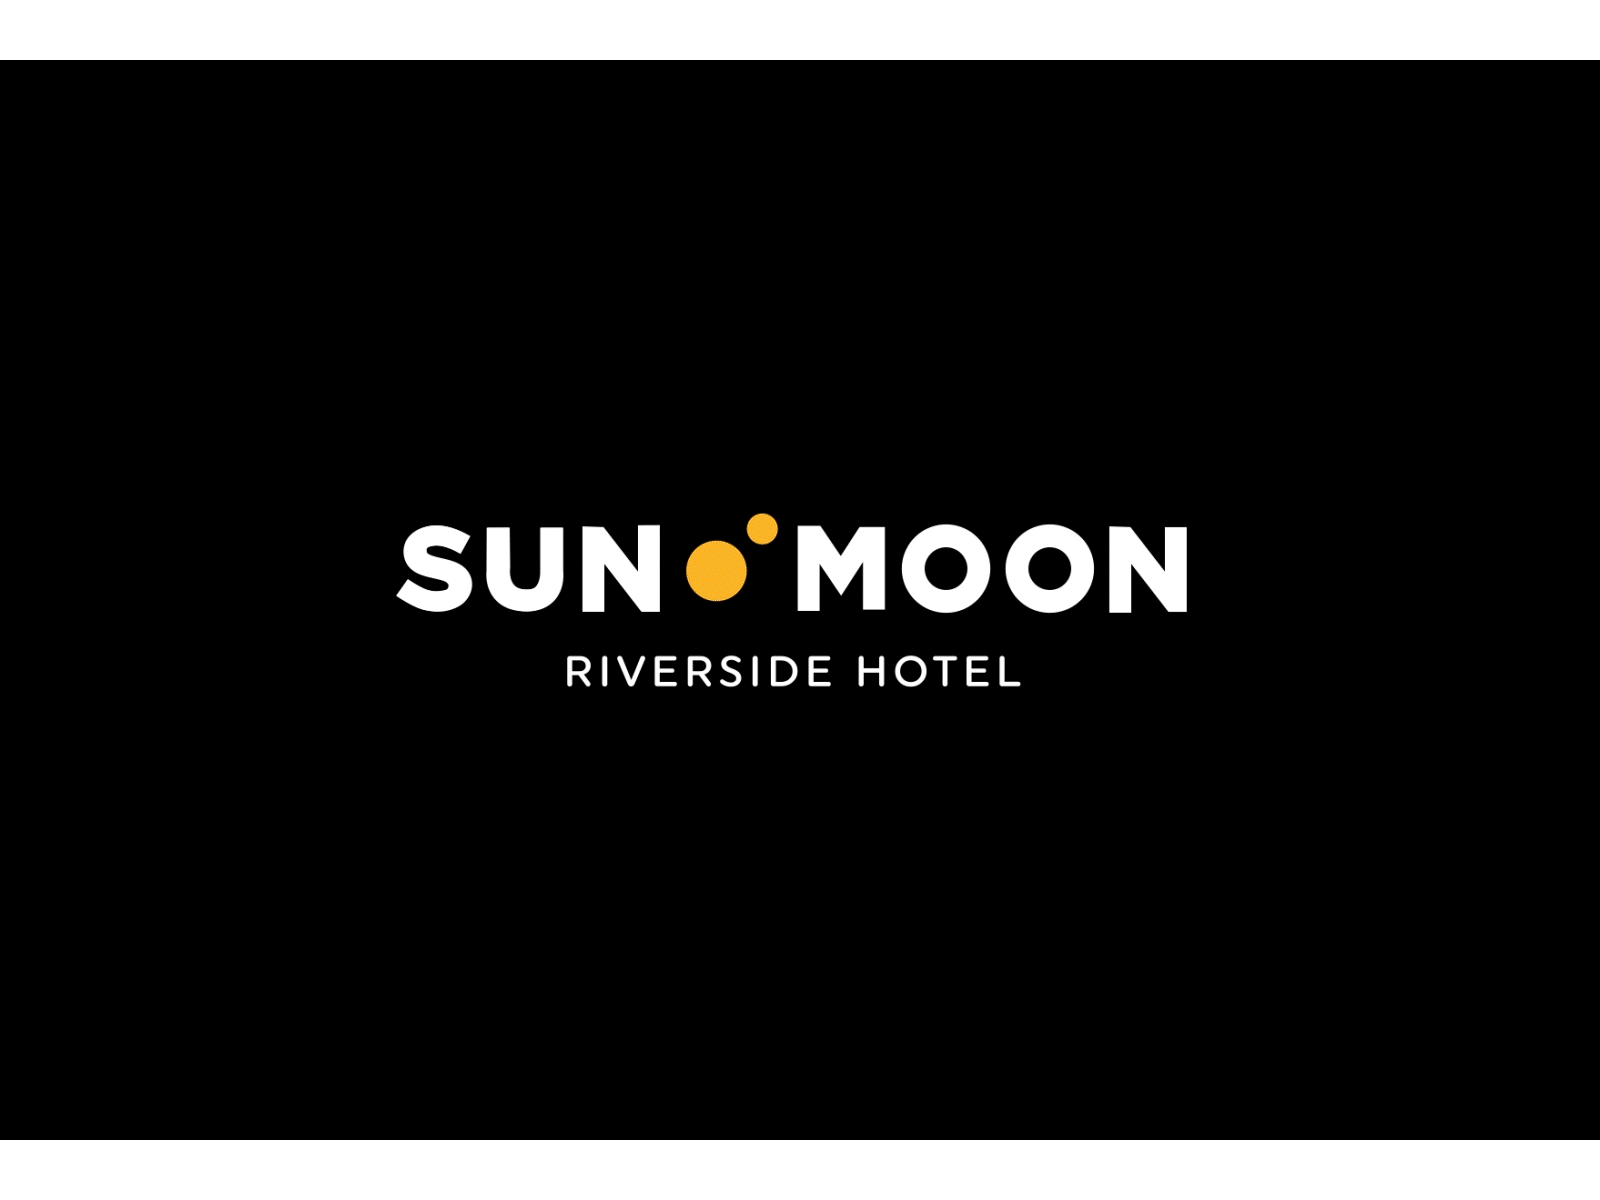 Sun & Moon logo Animation 3d animated animatedlogo animation logo logoanaimation moon rotation sun